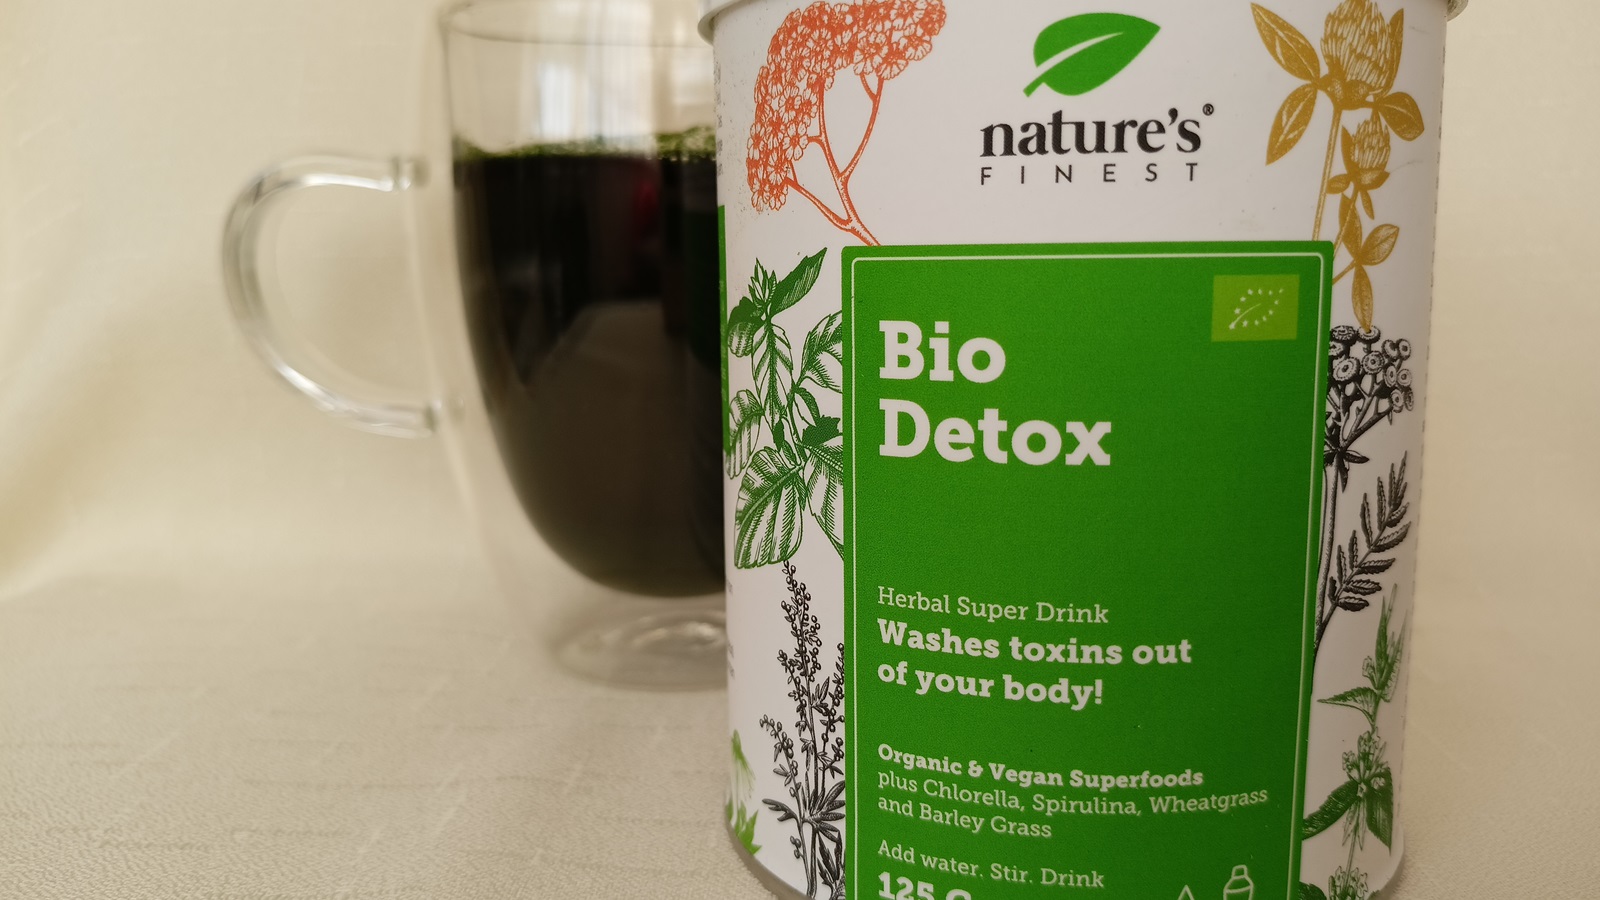 Bewertung: Wir haben Bio Detox Drink Mix von Nature’s Finest ausprobiert